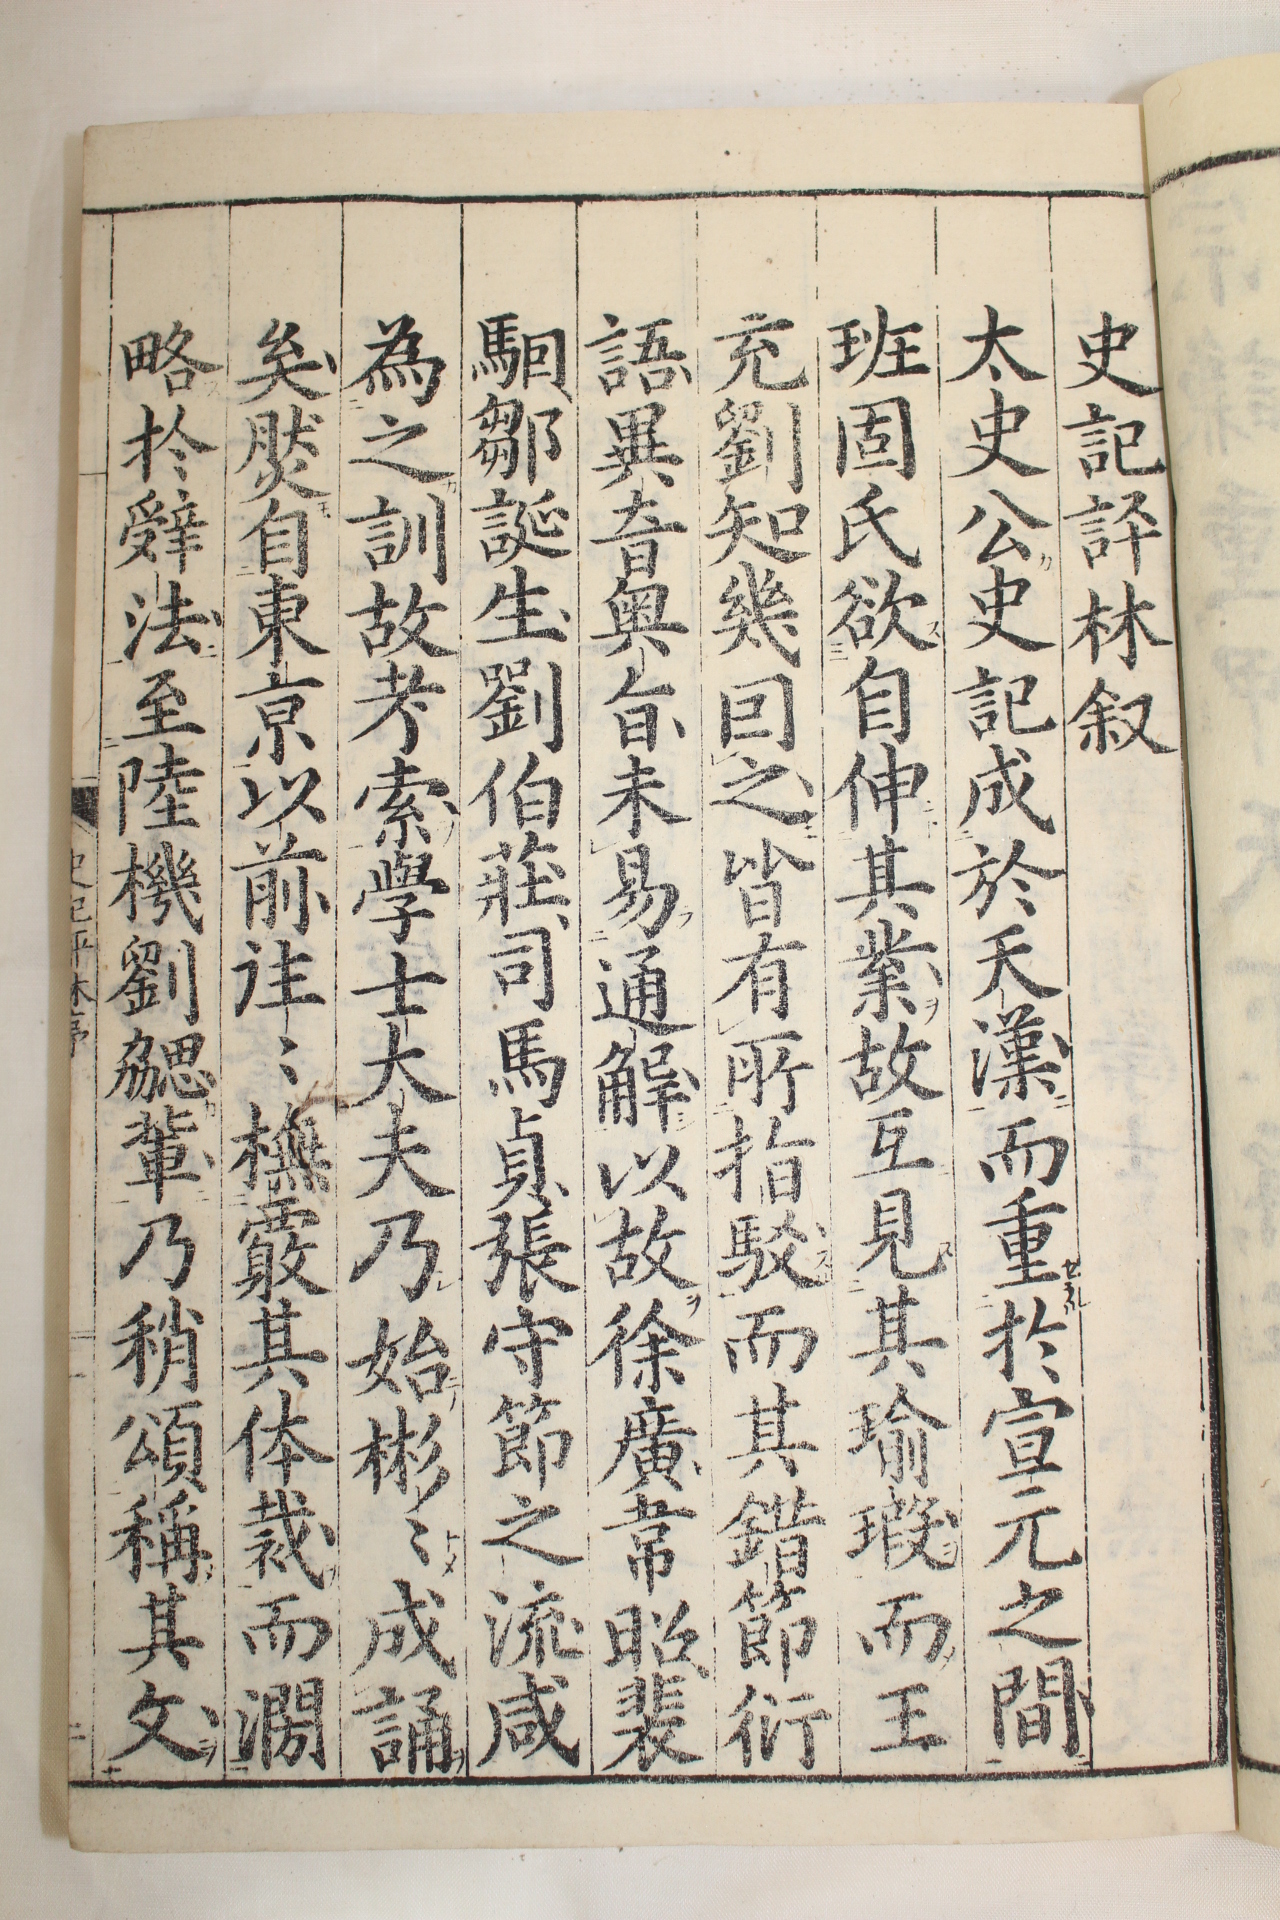 1789년(天明9年) 일본목판본 사기평림(史記平林) 22책